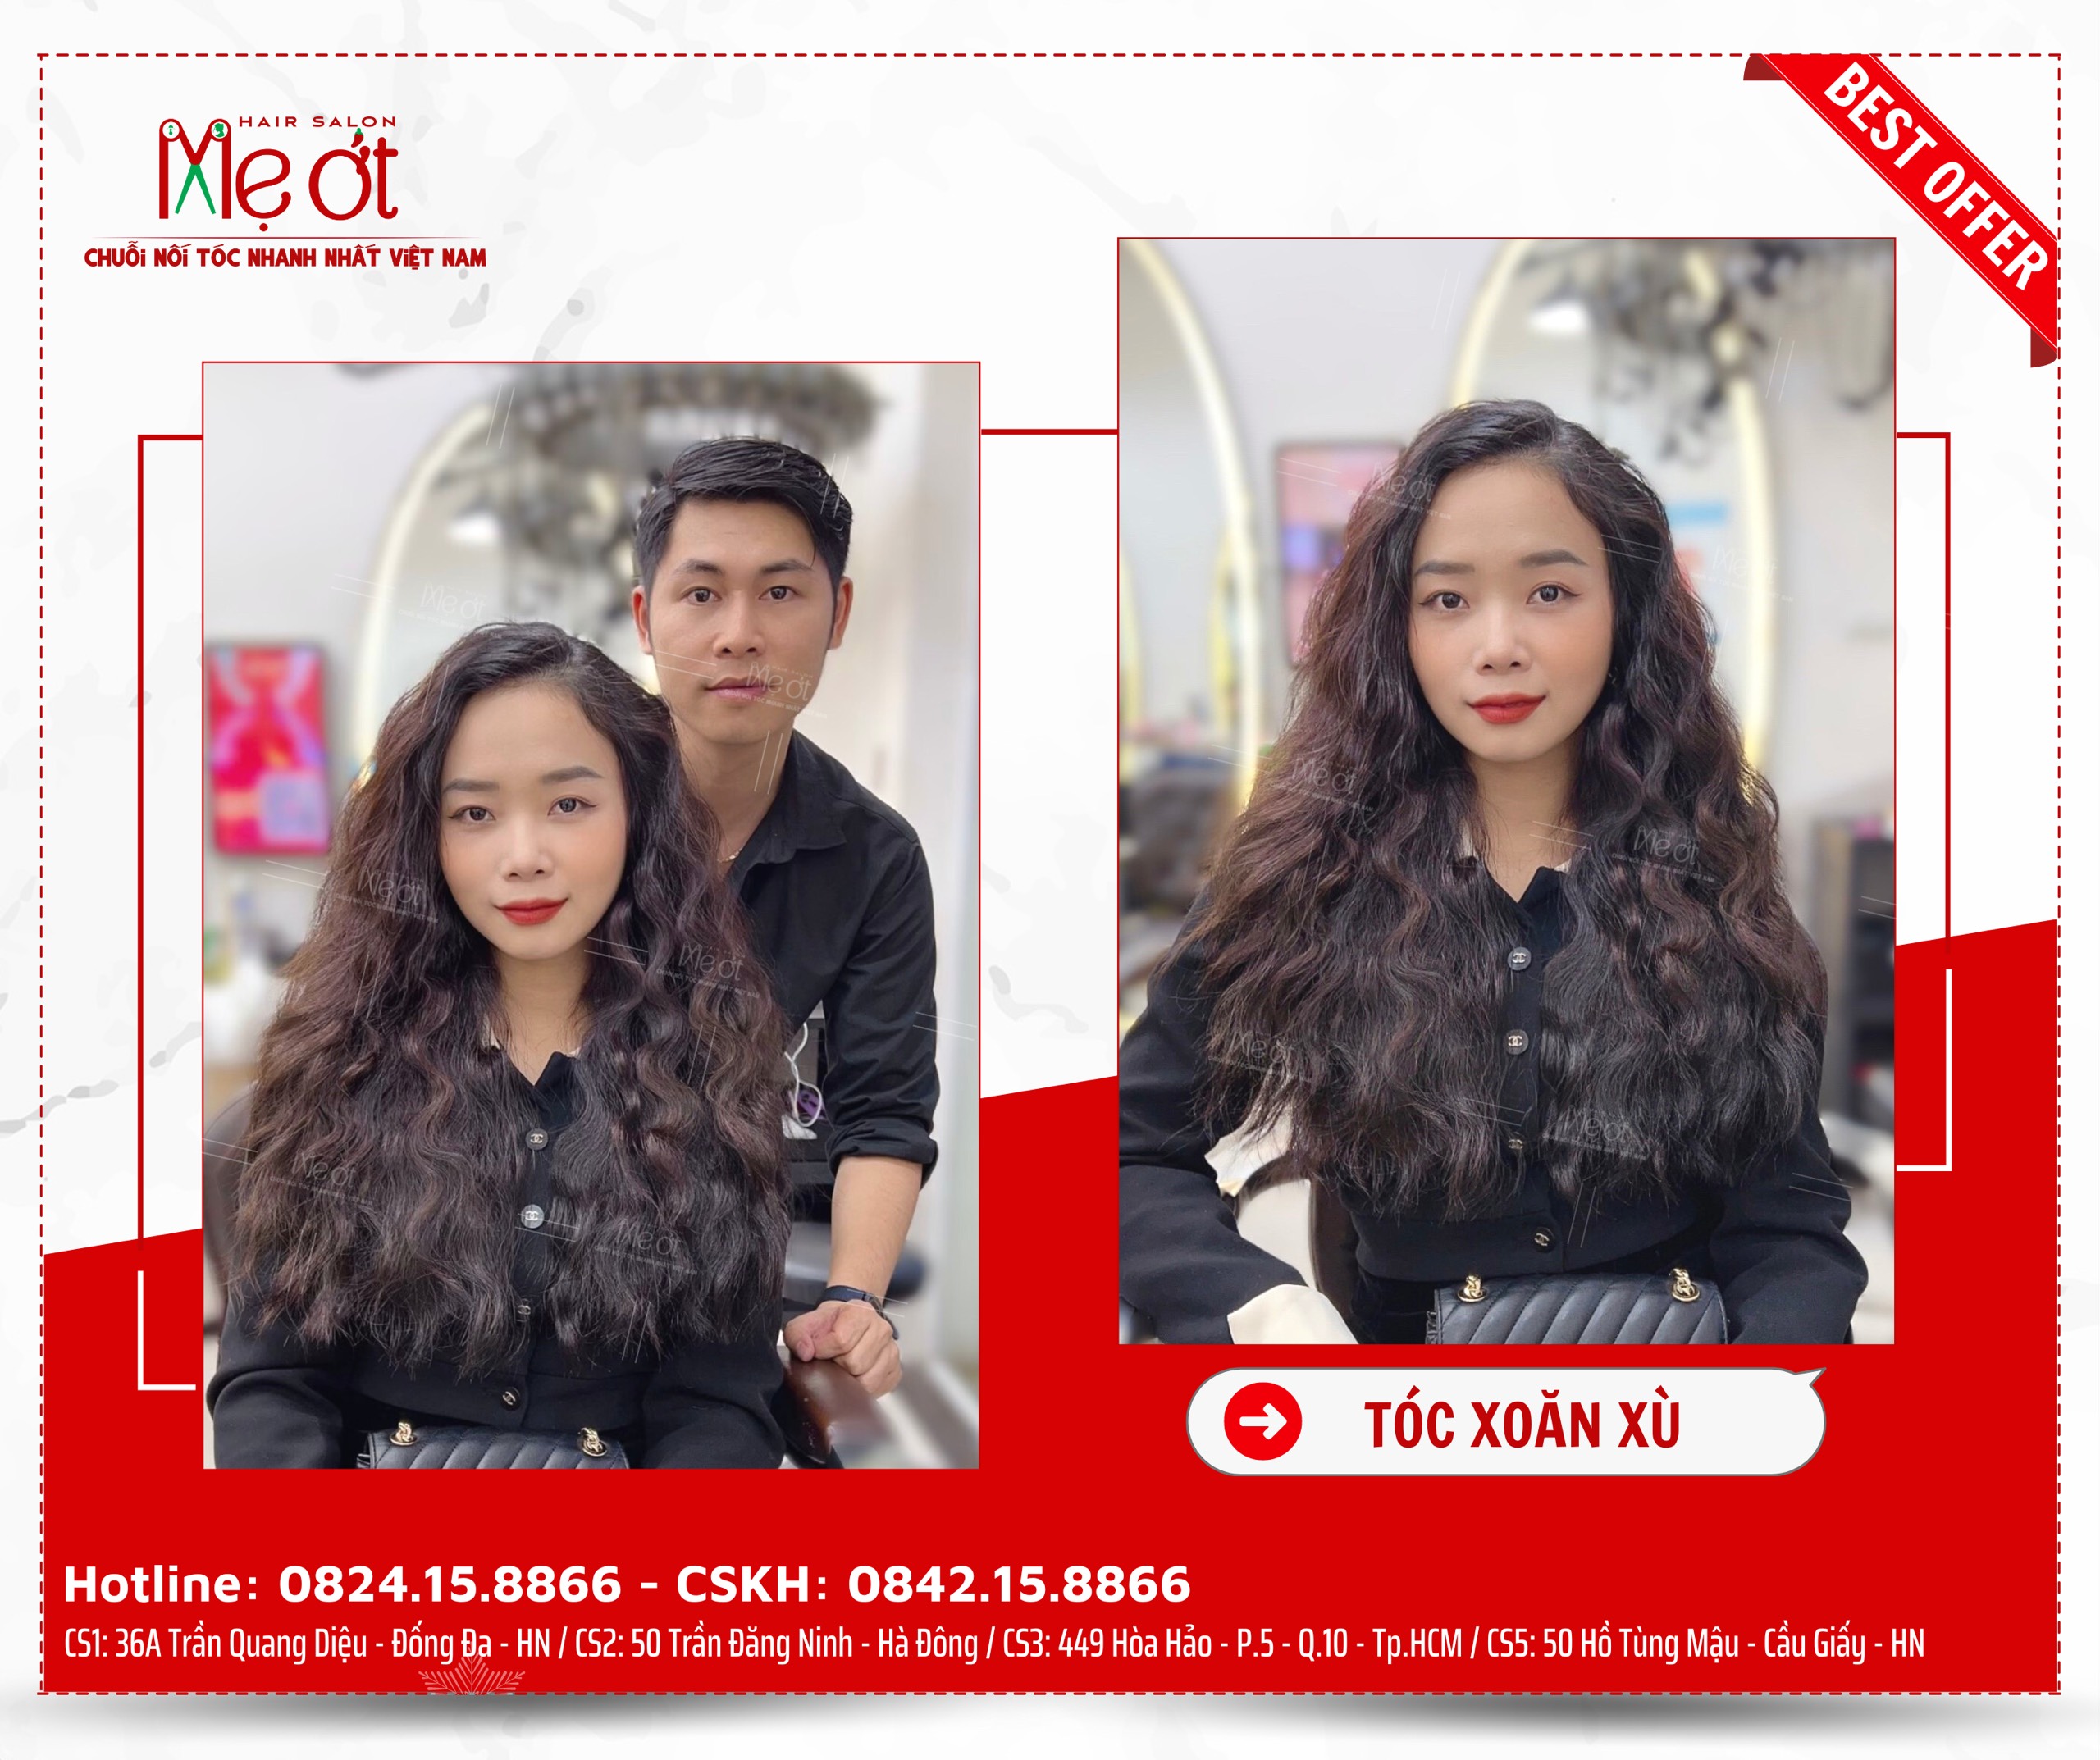 Review nối tóc lông vũ – Kiểu tóc nối lông vũ đẹp nhất hiện nay - Nối Tóc  Mẹ Ớt - Mẹ Ớt Hair Salon - Nối Tóc Đẹp Nhất Việt Nam